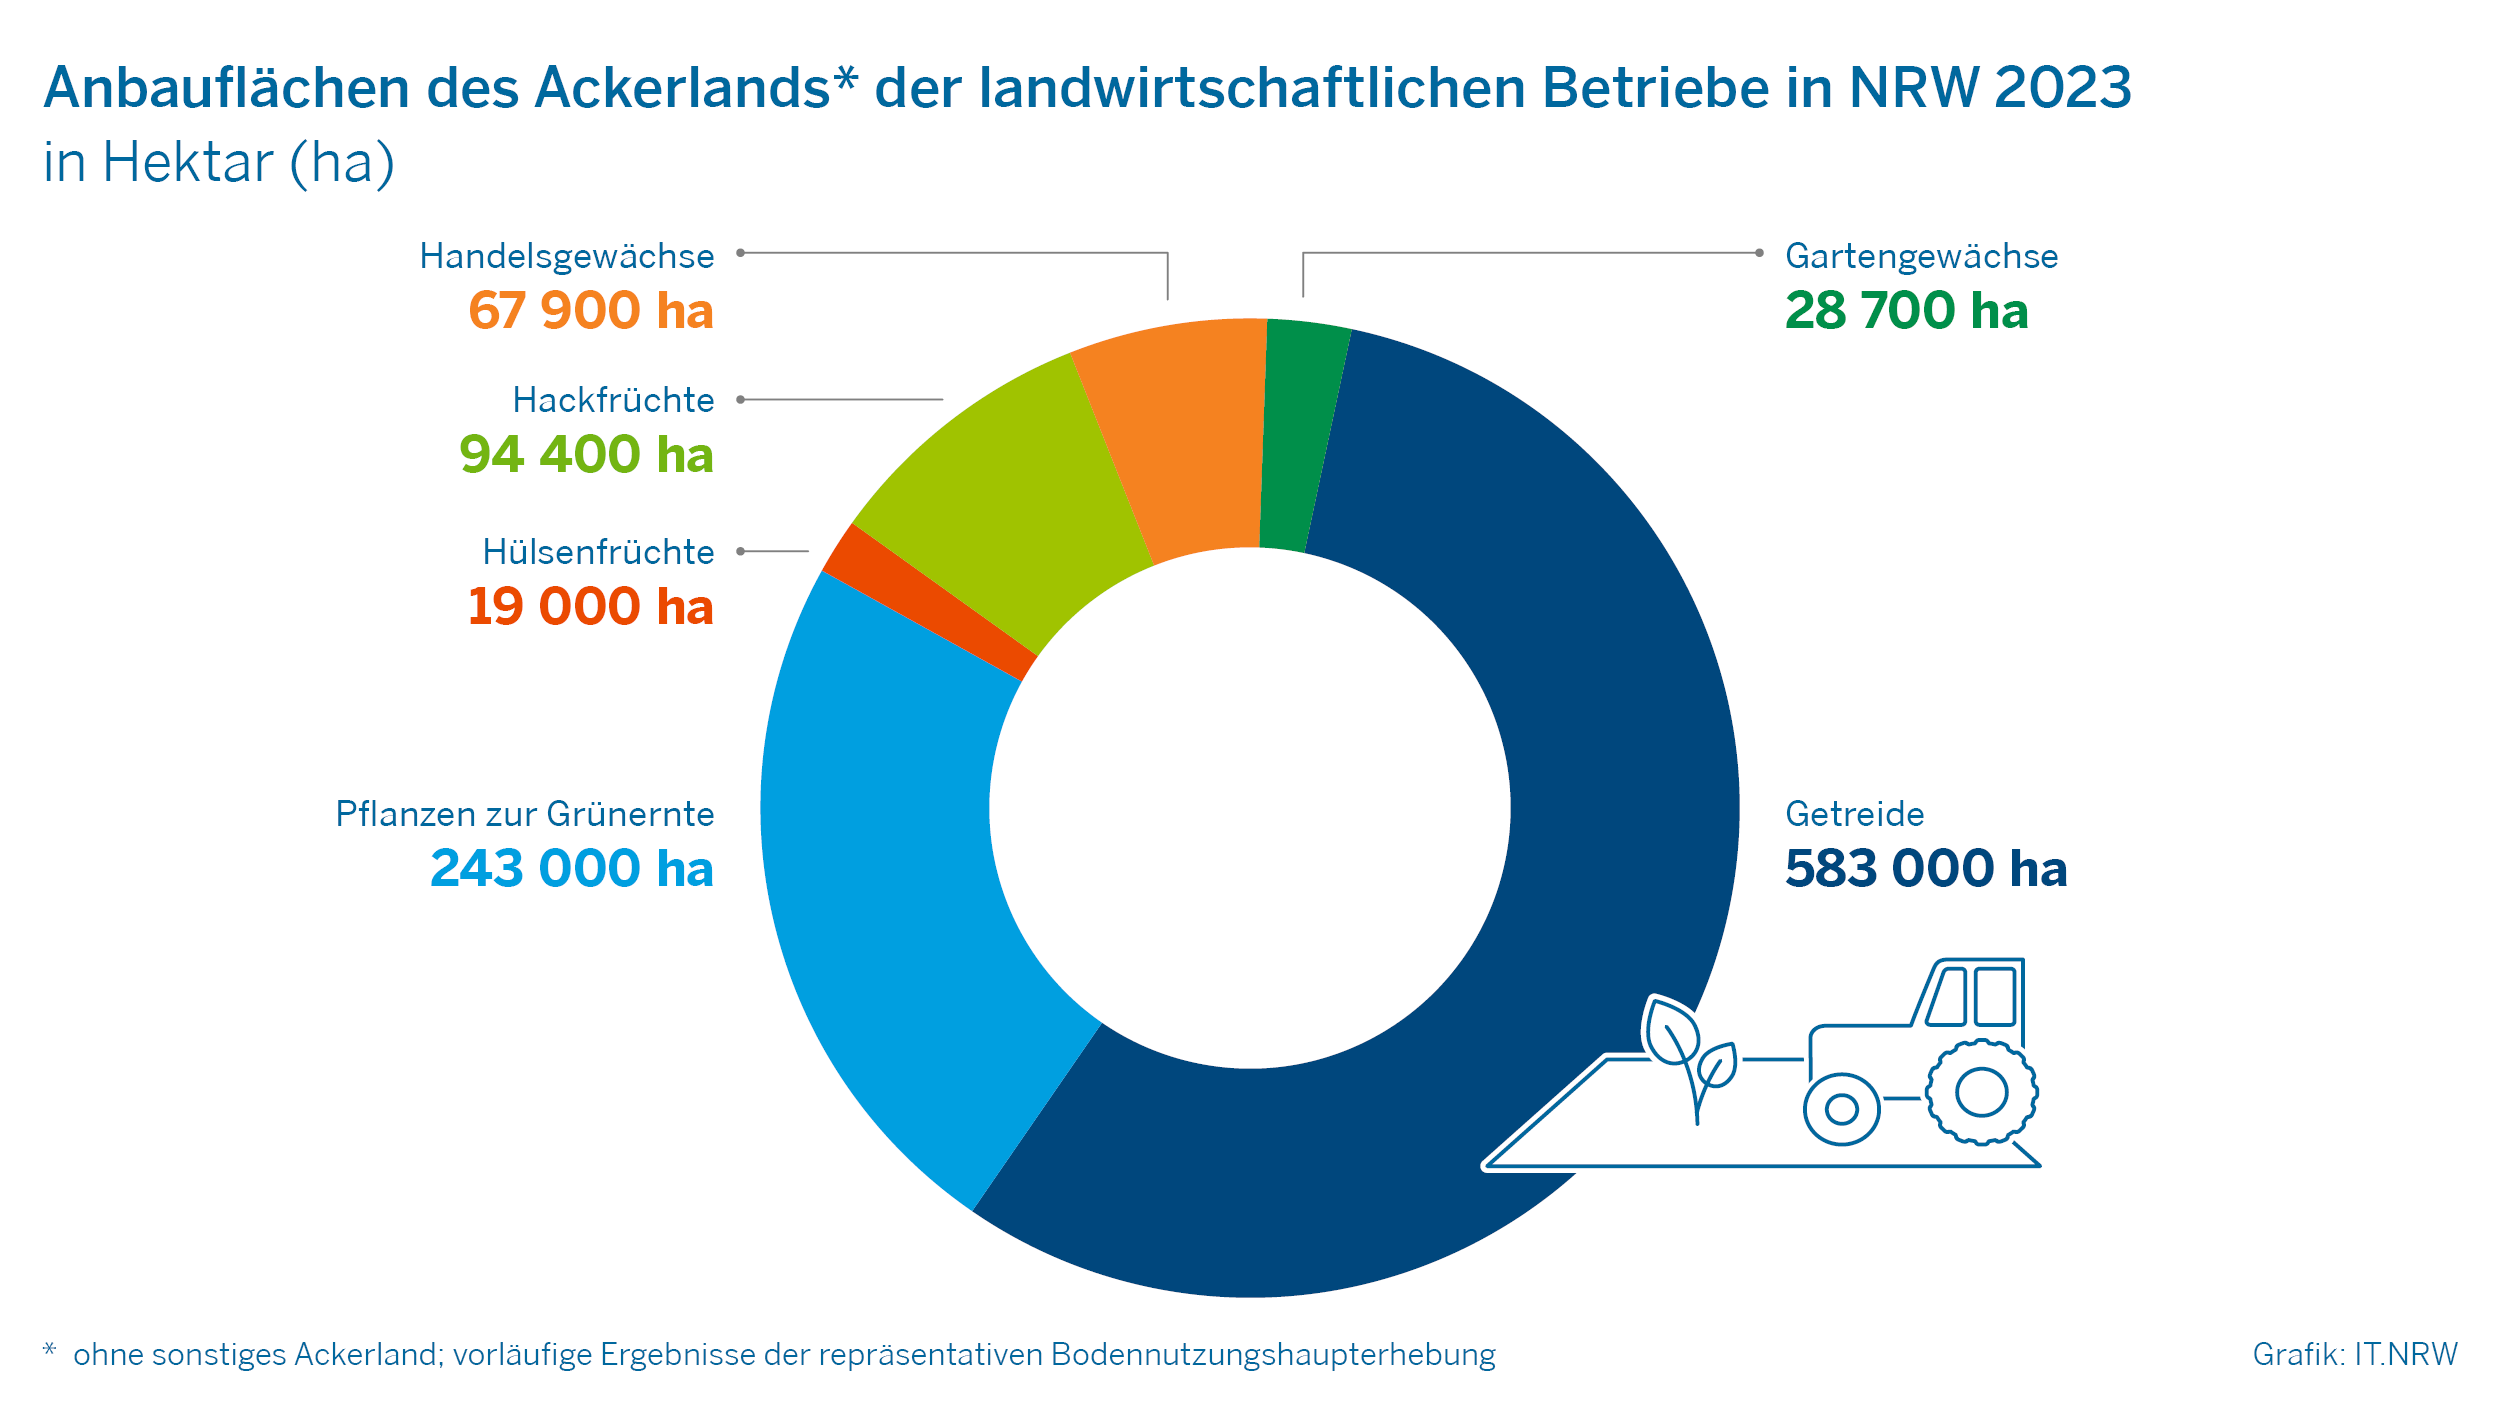 Anbauflächen des Ackerlands der landwirtschaftlichen Betriebe in NRW 2023